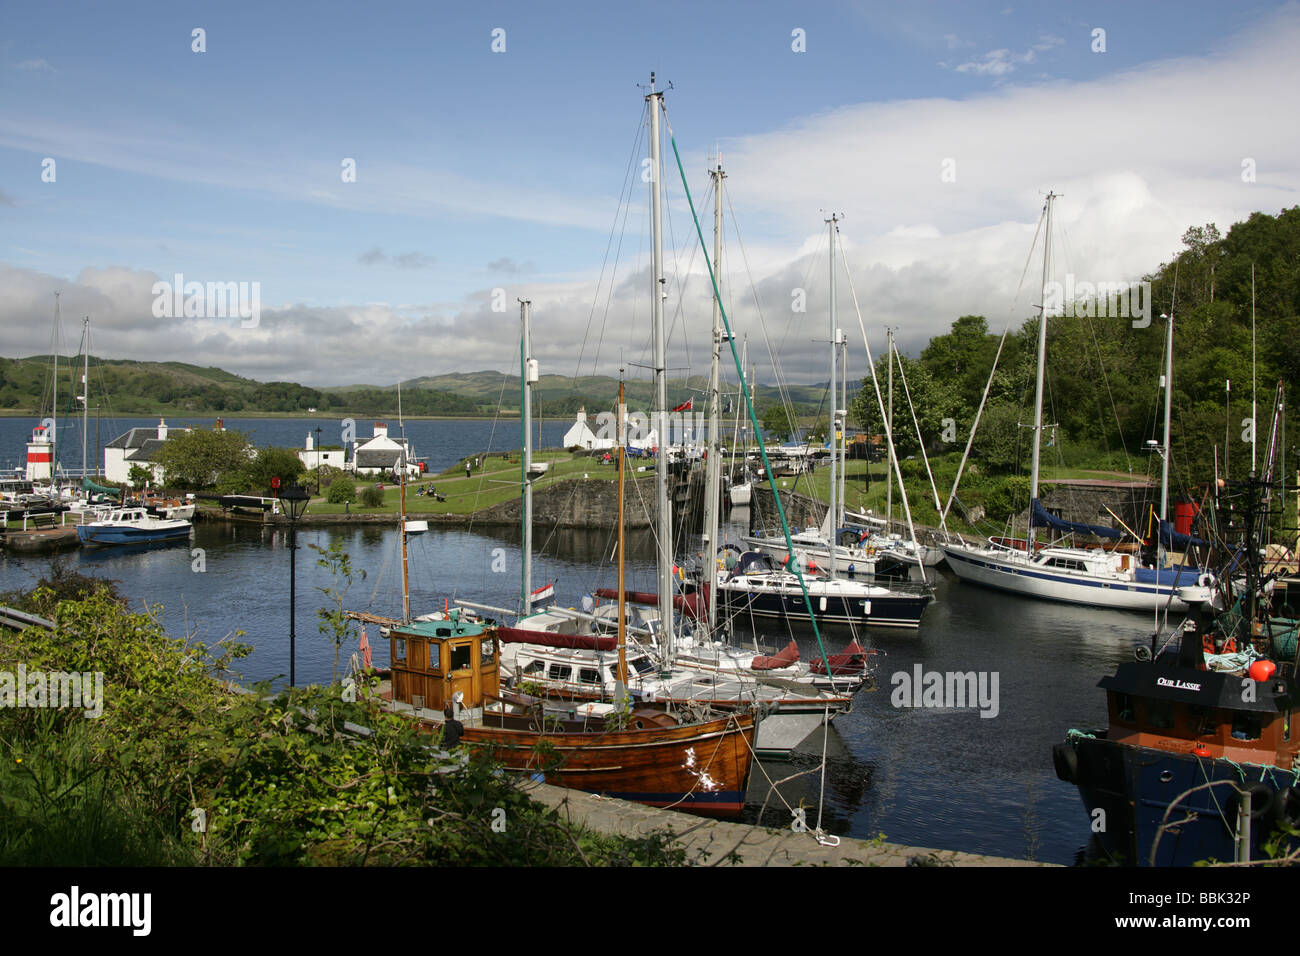 Crinan Canal, l'Écosse. Les loisirs et les bateaux de pêche amarrés dans le port de Crinan avec le bateau de pêche à l'avant-plan Scarbh Banque D'Images